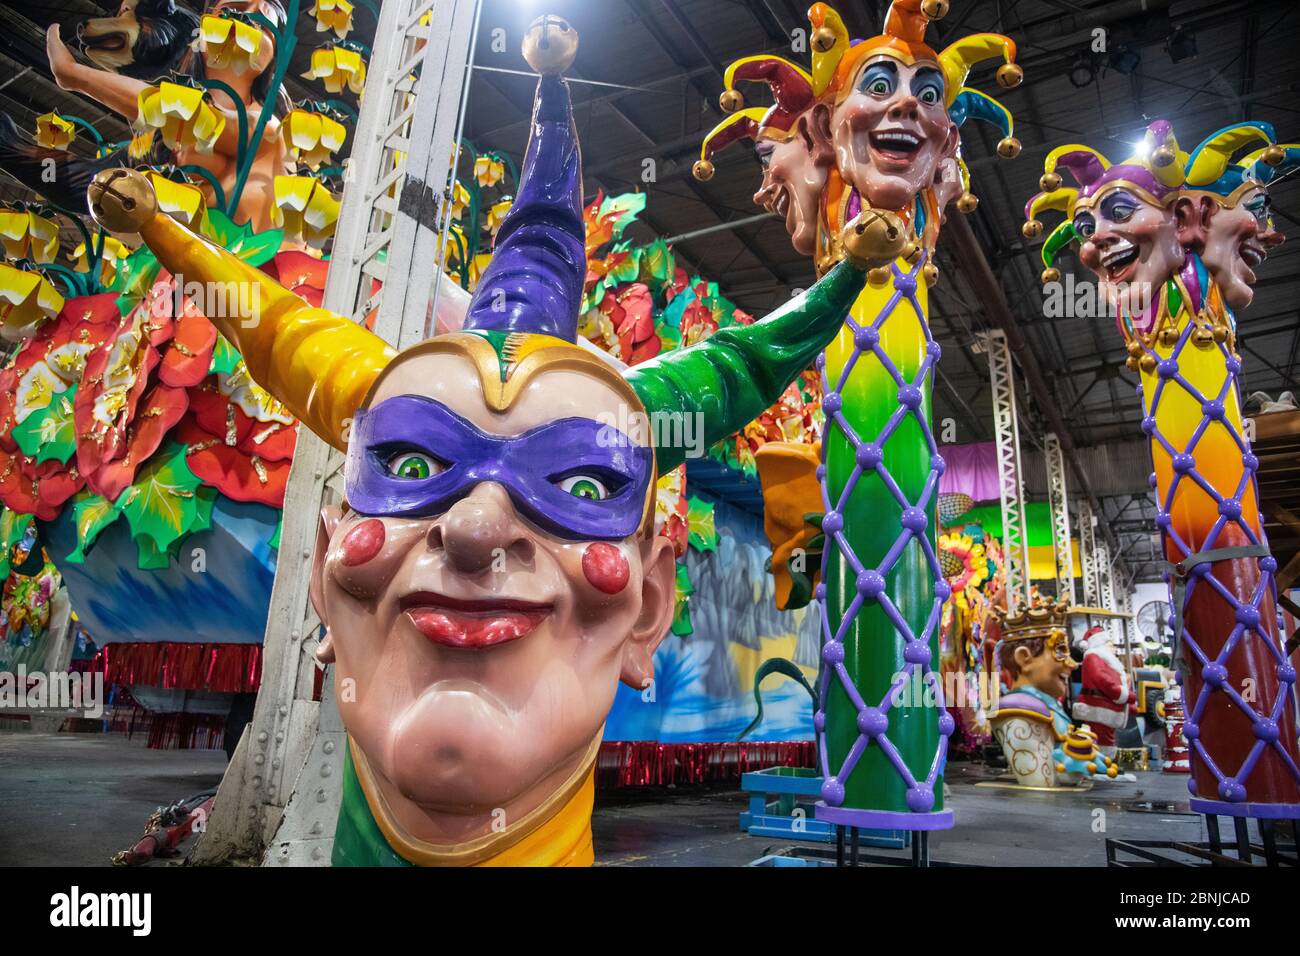 Clown figure che compariranno su un galleggiamento della parata di Mardis Gras, New Orleans, Louisiana, Stati Uniti d'America, America del Nord Foto Stock